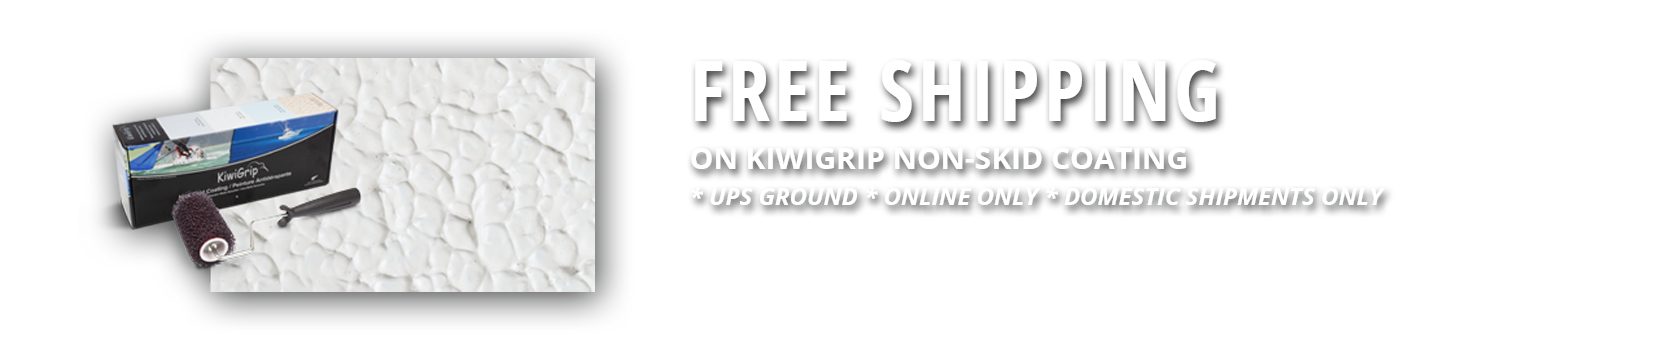 KiwiGrip Free Shipping